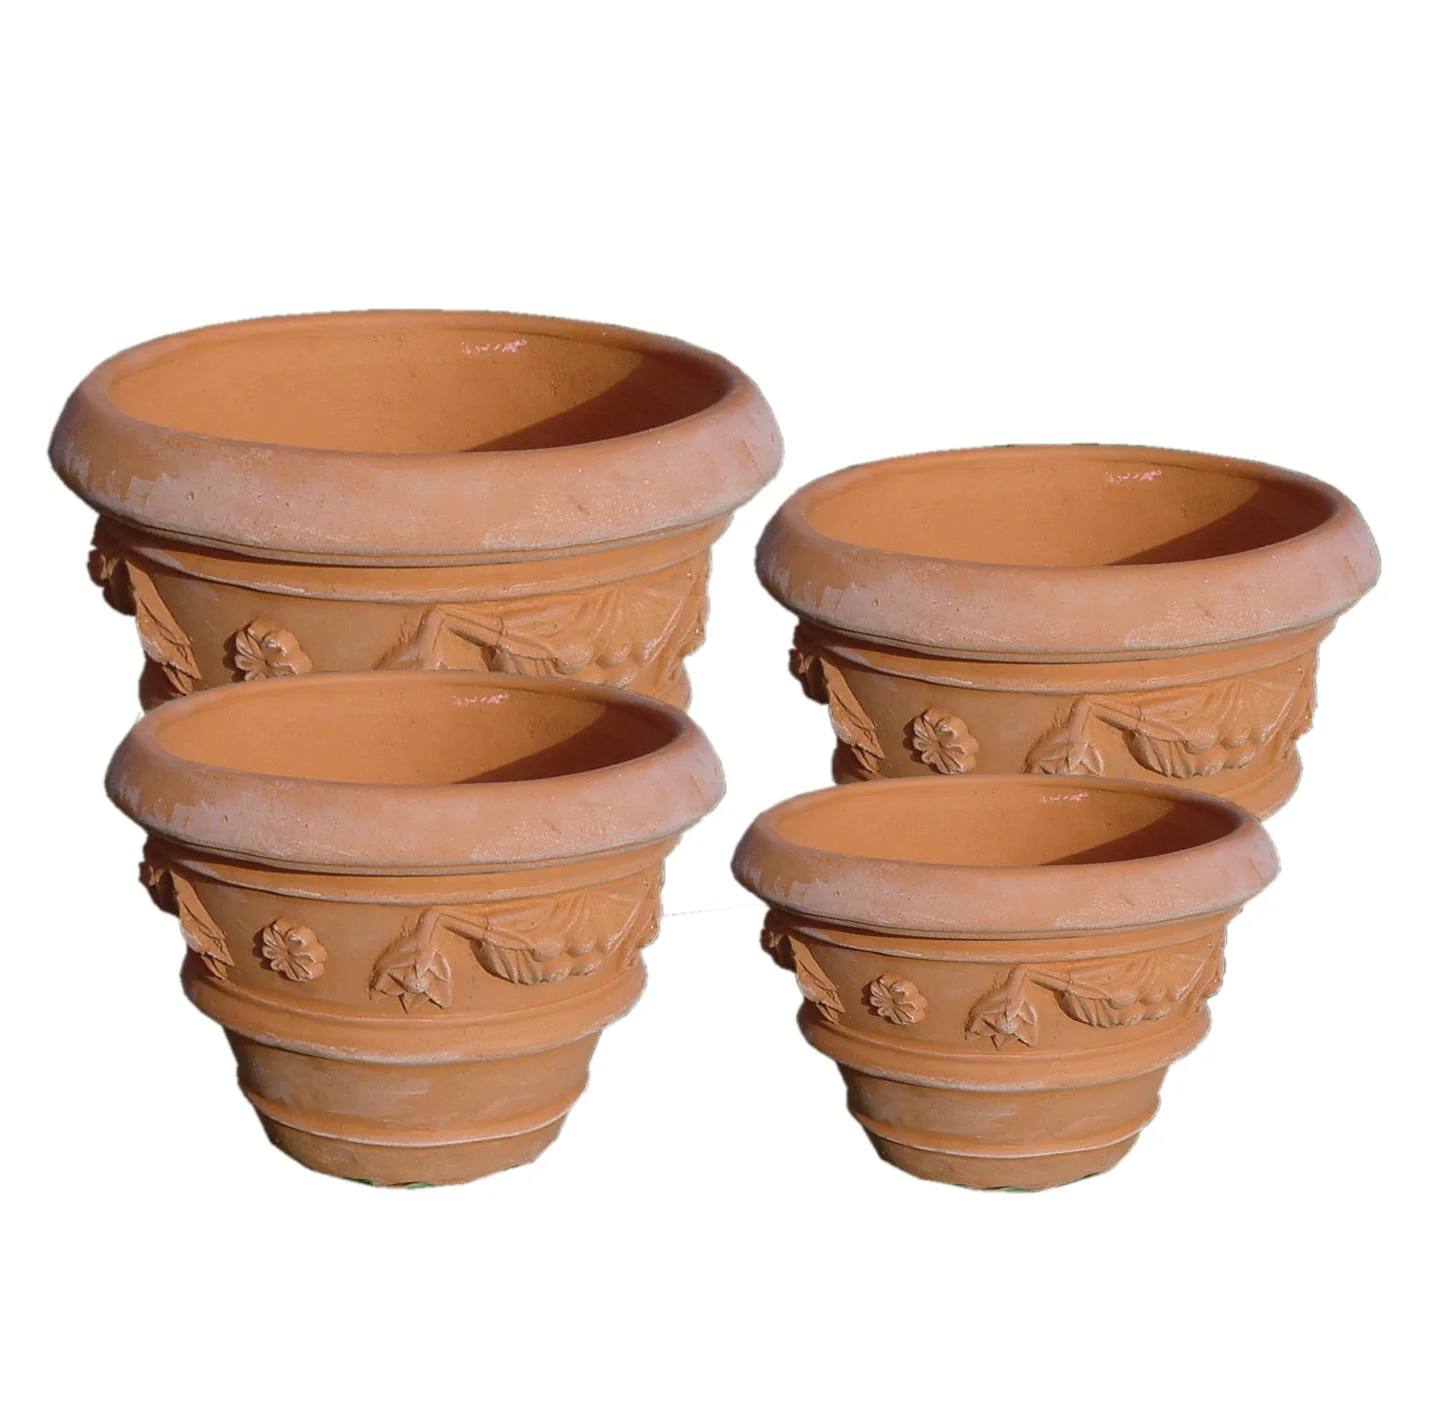 Ceramic Terracotta Pot Medium Size Handmade Design Style-for Home Garden Nursery Shopping Mall Decor Europe-Inspired